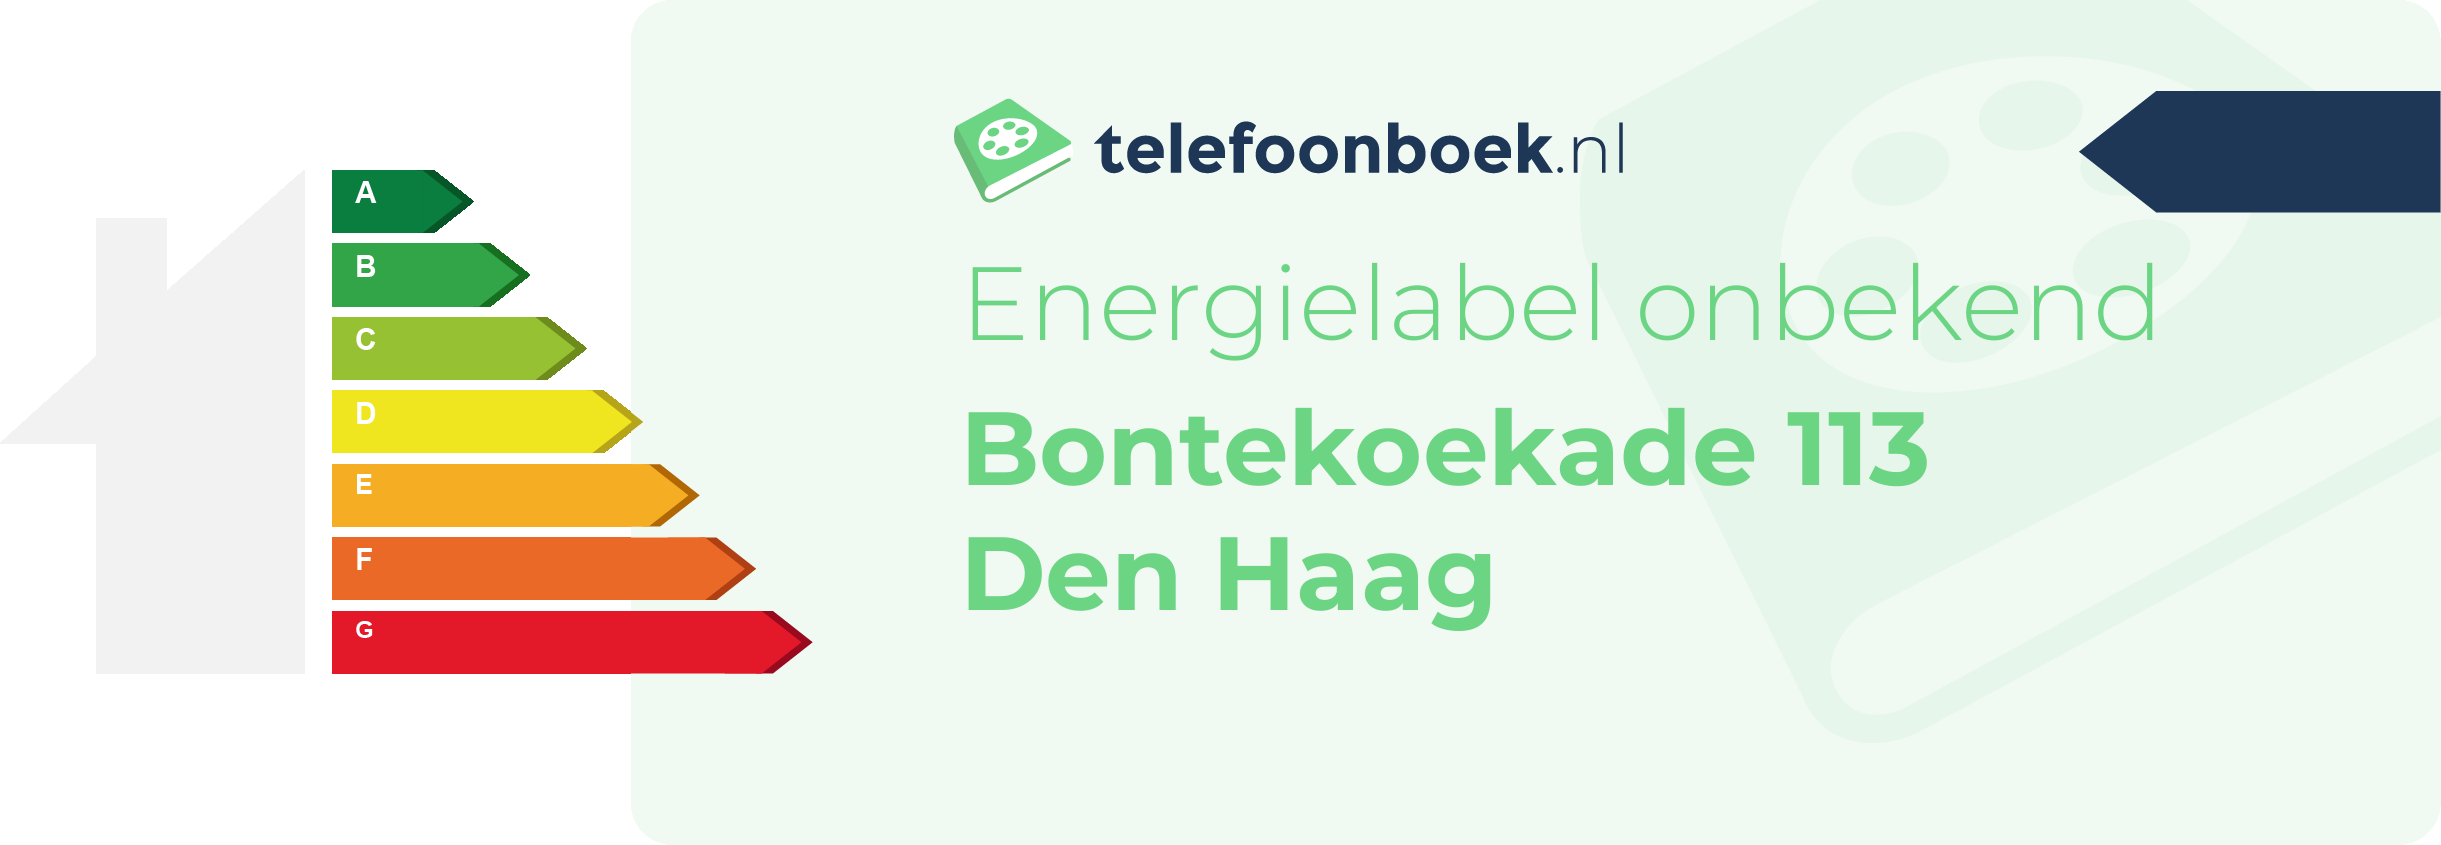 Energielabel Bontekoekade 113 Den Haag